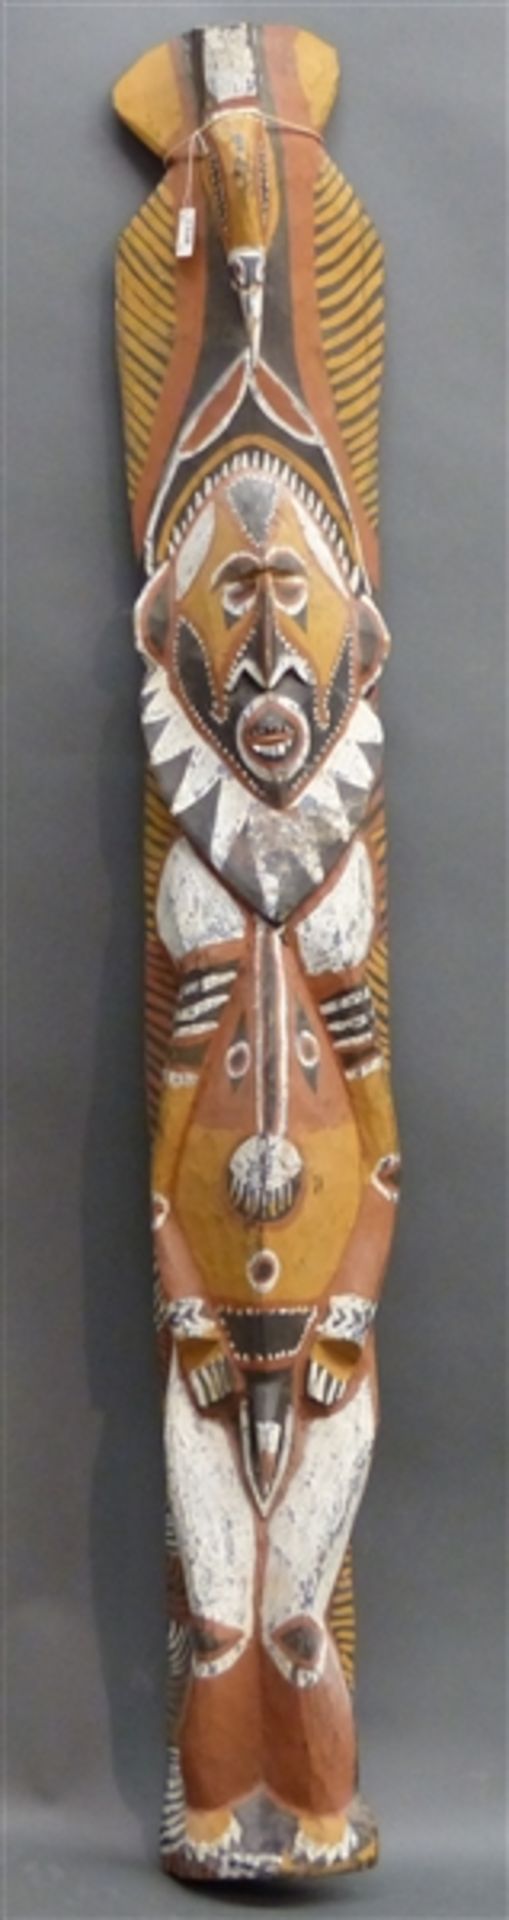 Holzschnitzerei Afrika, bemalt, 20. Jh., h 128 cm,